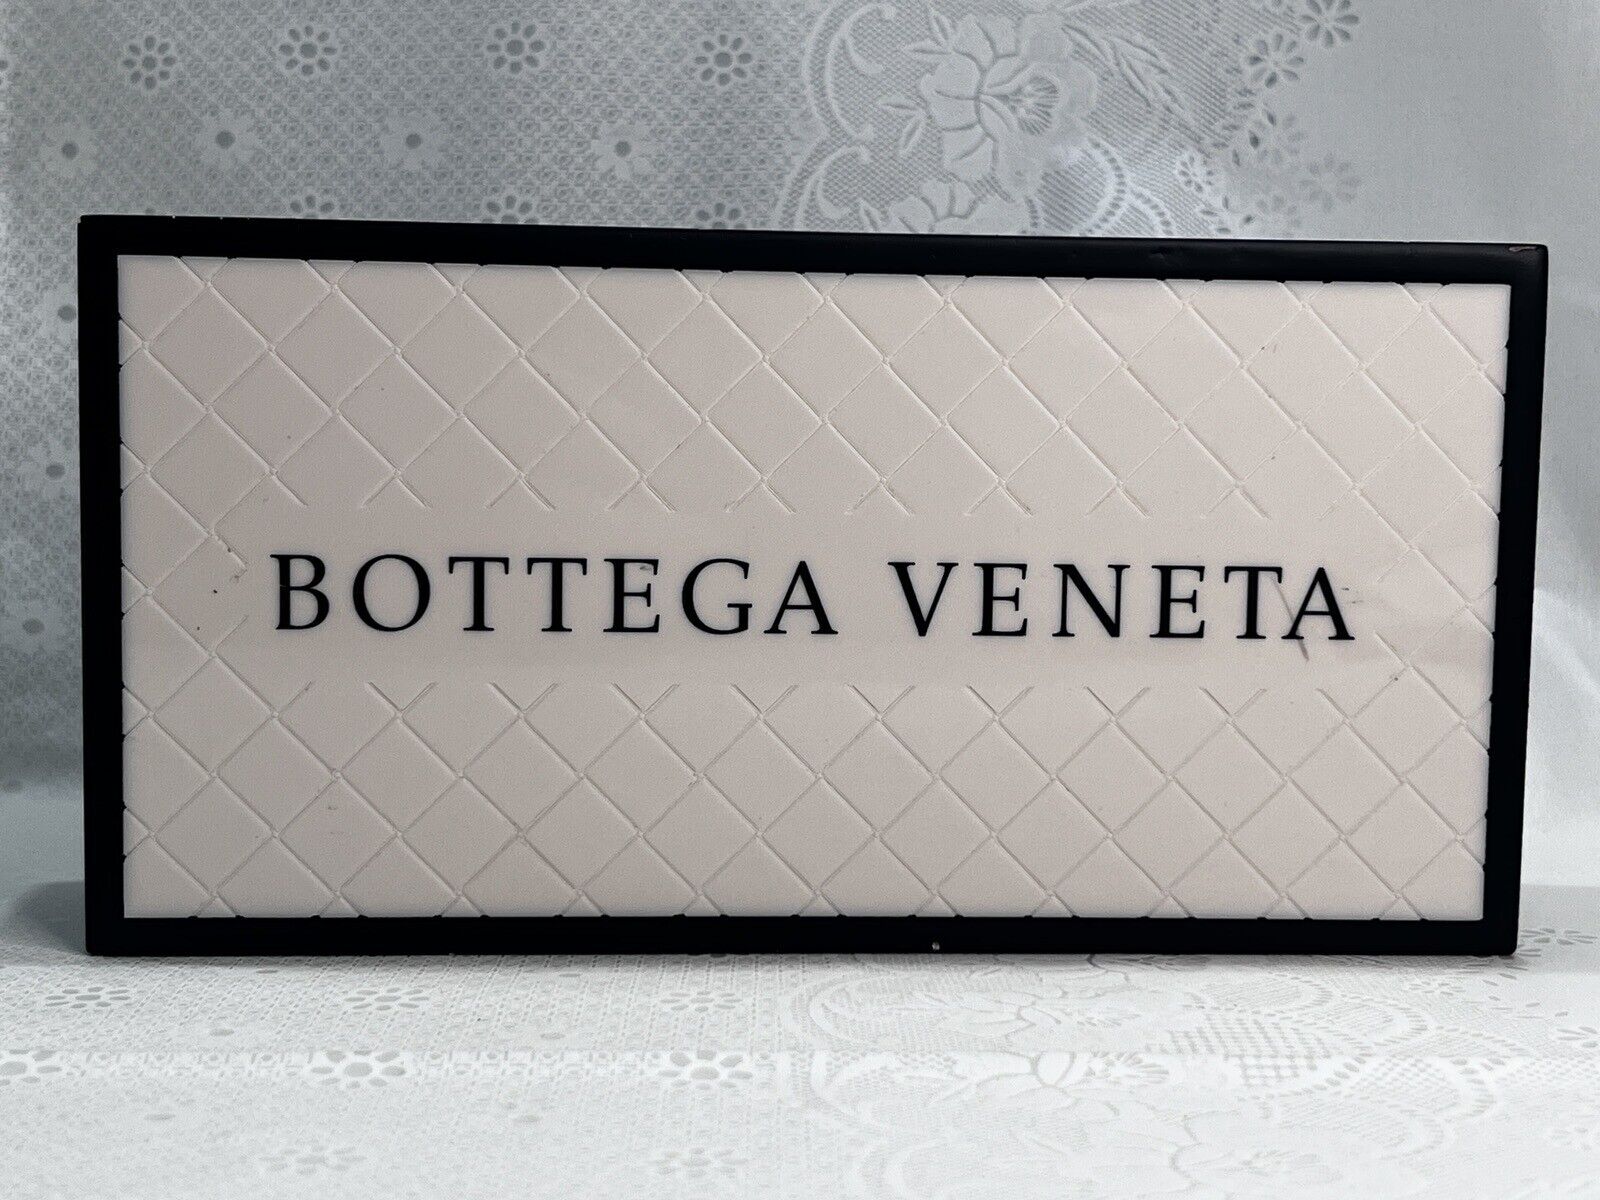 Bottega Veneta Authentic Retail Display Plaque